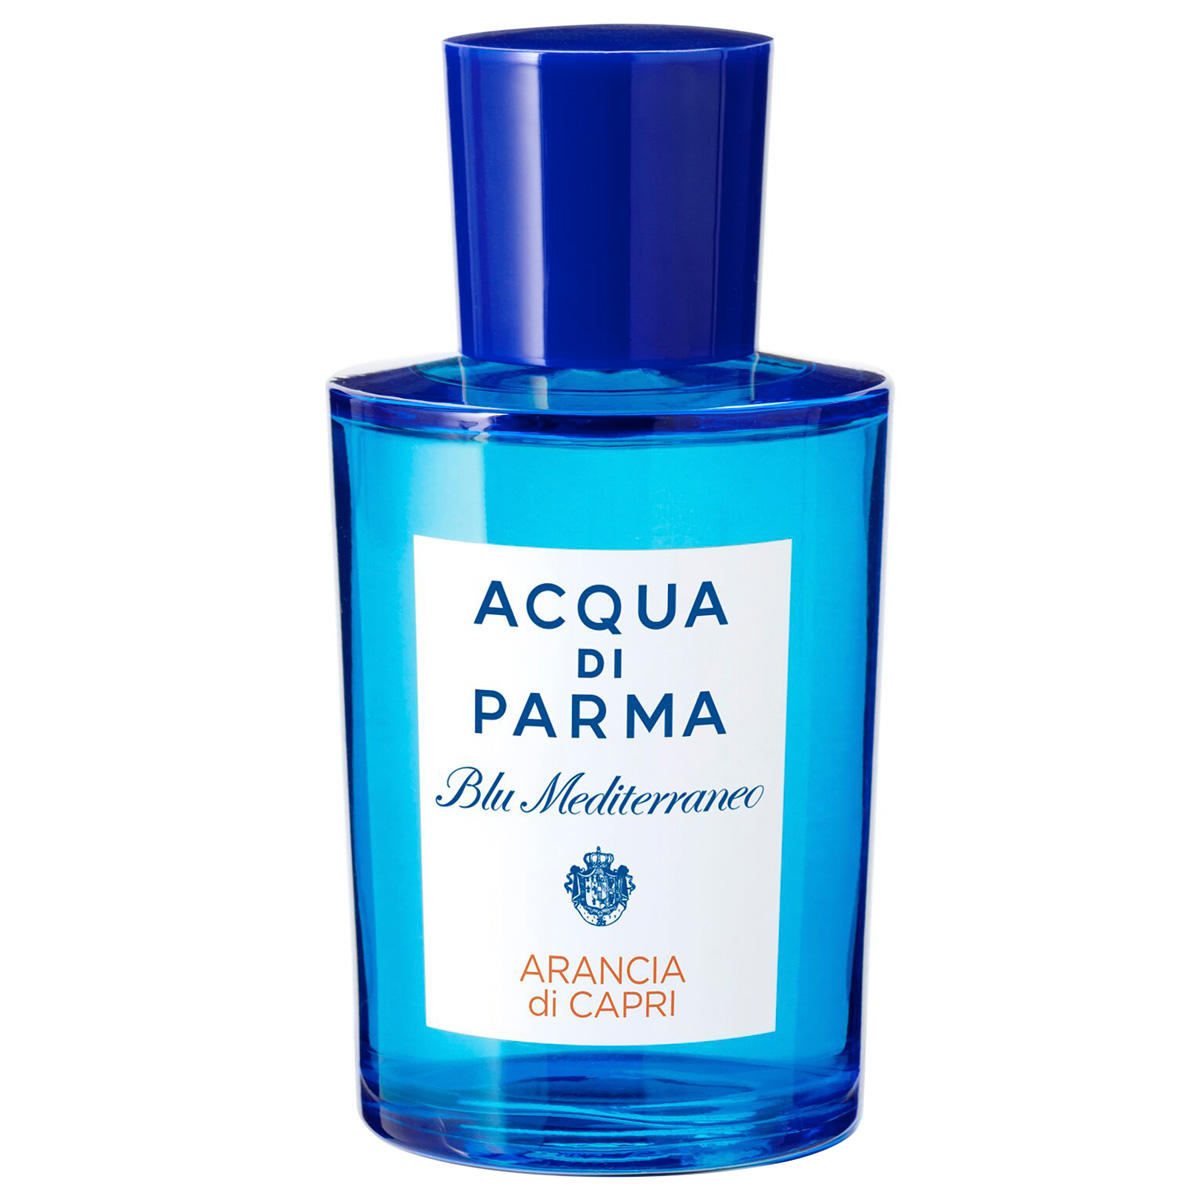 Acqua di Parma Blu Mediterraneo Arancia di Capri Eau de Toilette 100 ml - 1